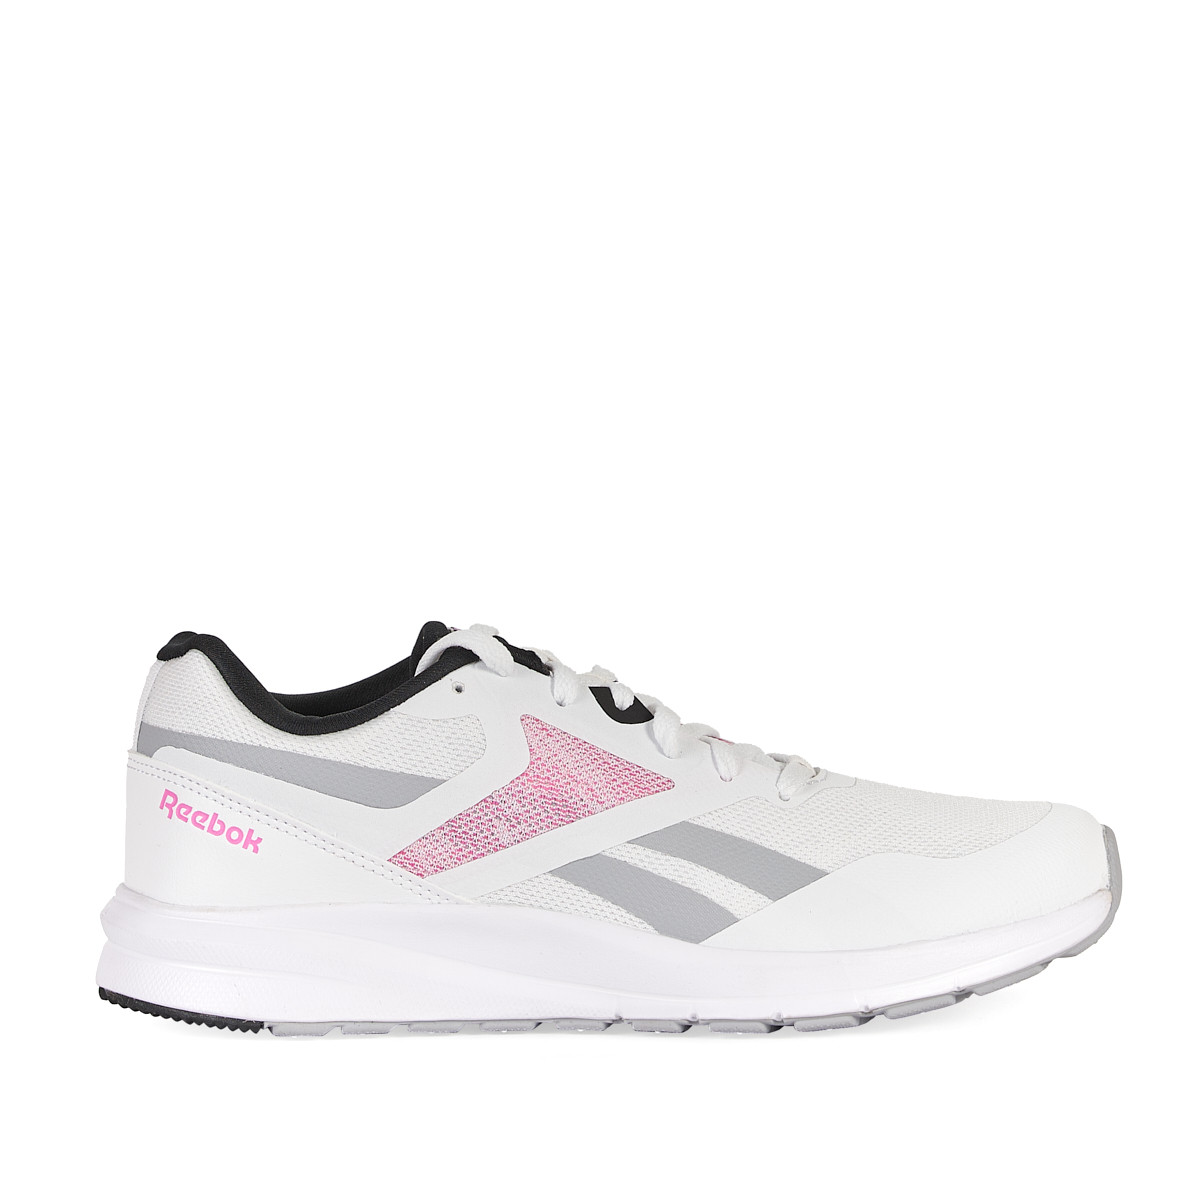 Zapatillas deportivas blancas con detalles en gris y rosa runner 4.0 Reebok  | Querol online